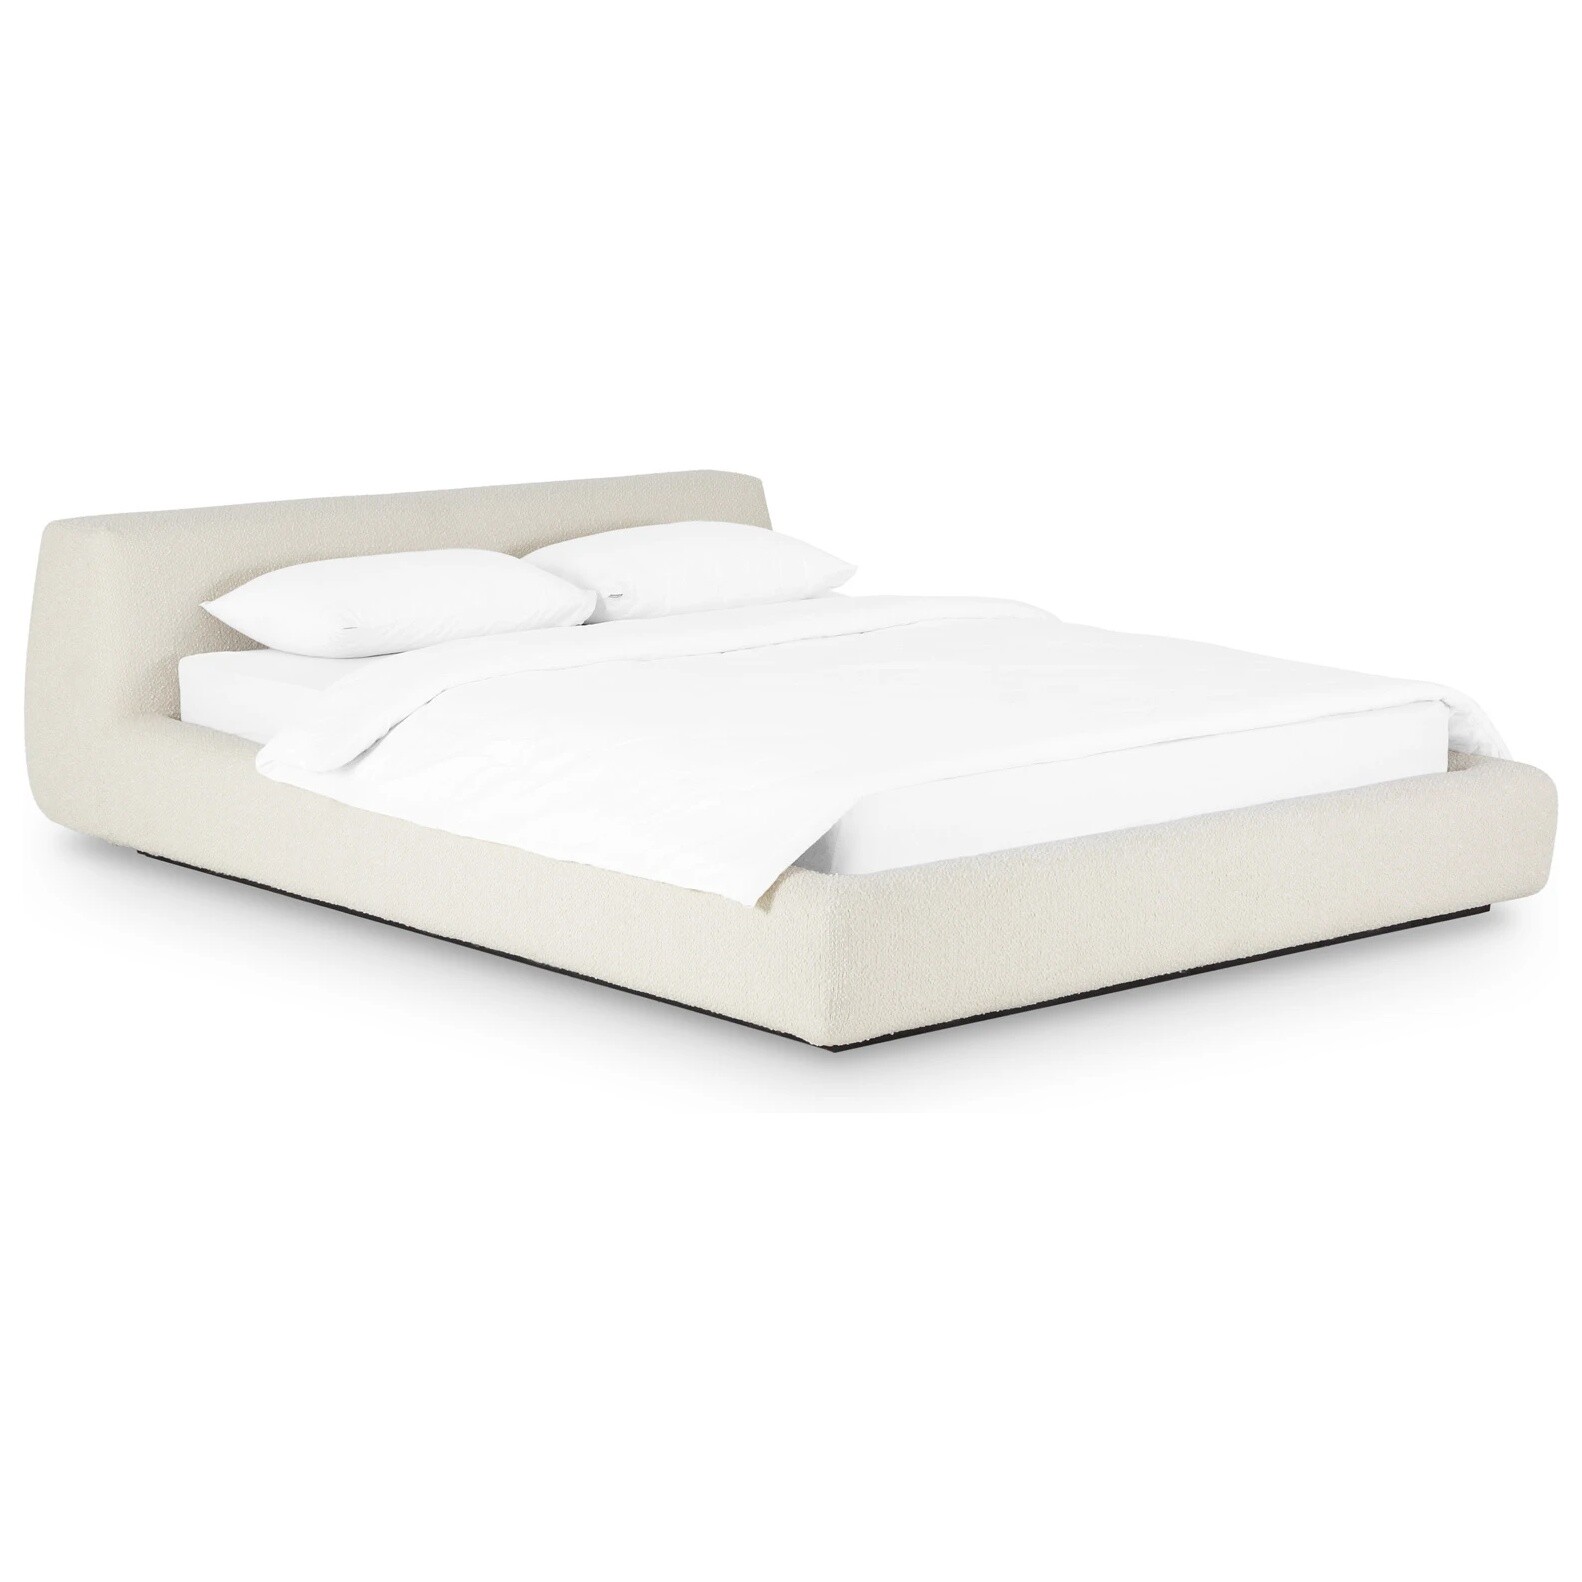 Кровать двуспальная со съемным чехлом букле 160х200 см белая Vatta Buckle whitte